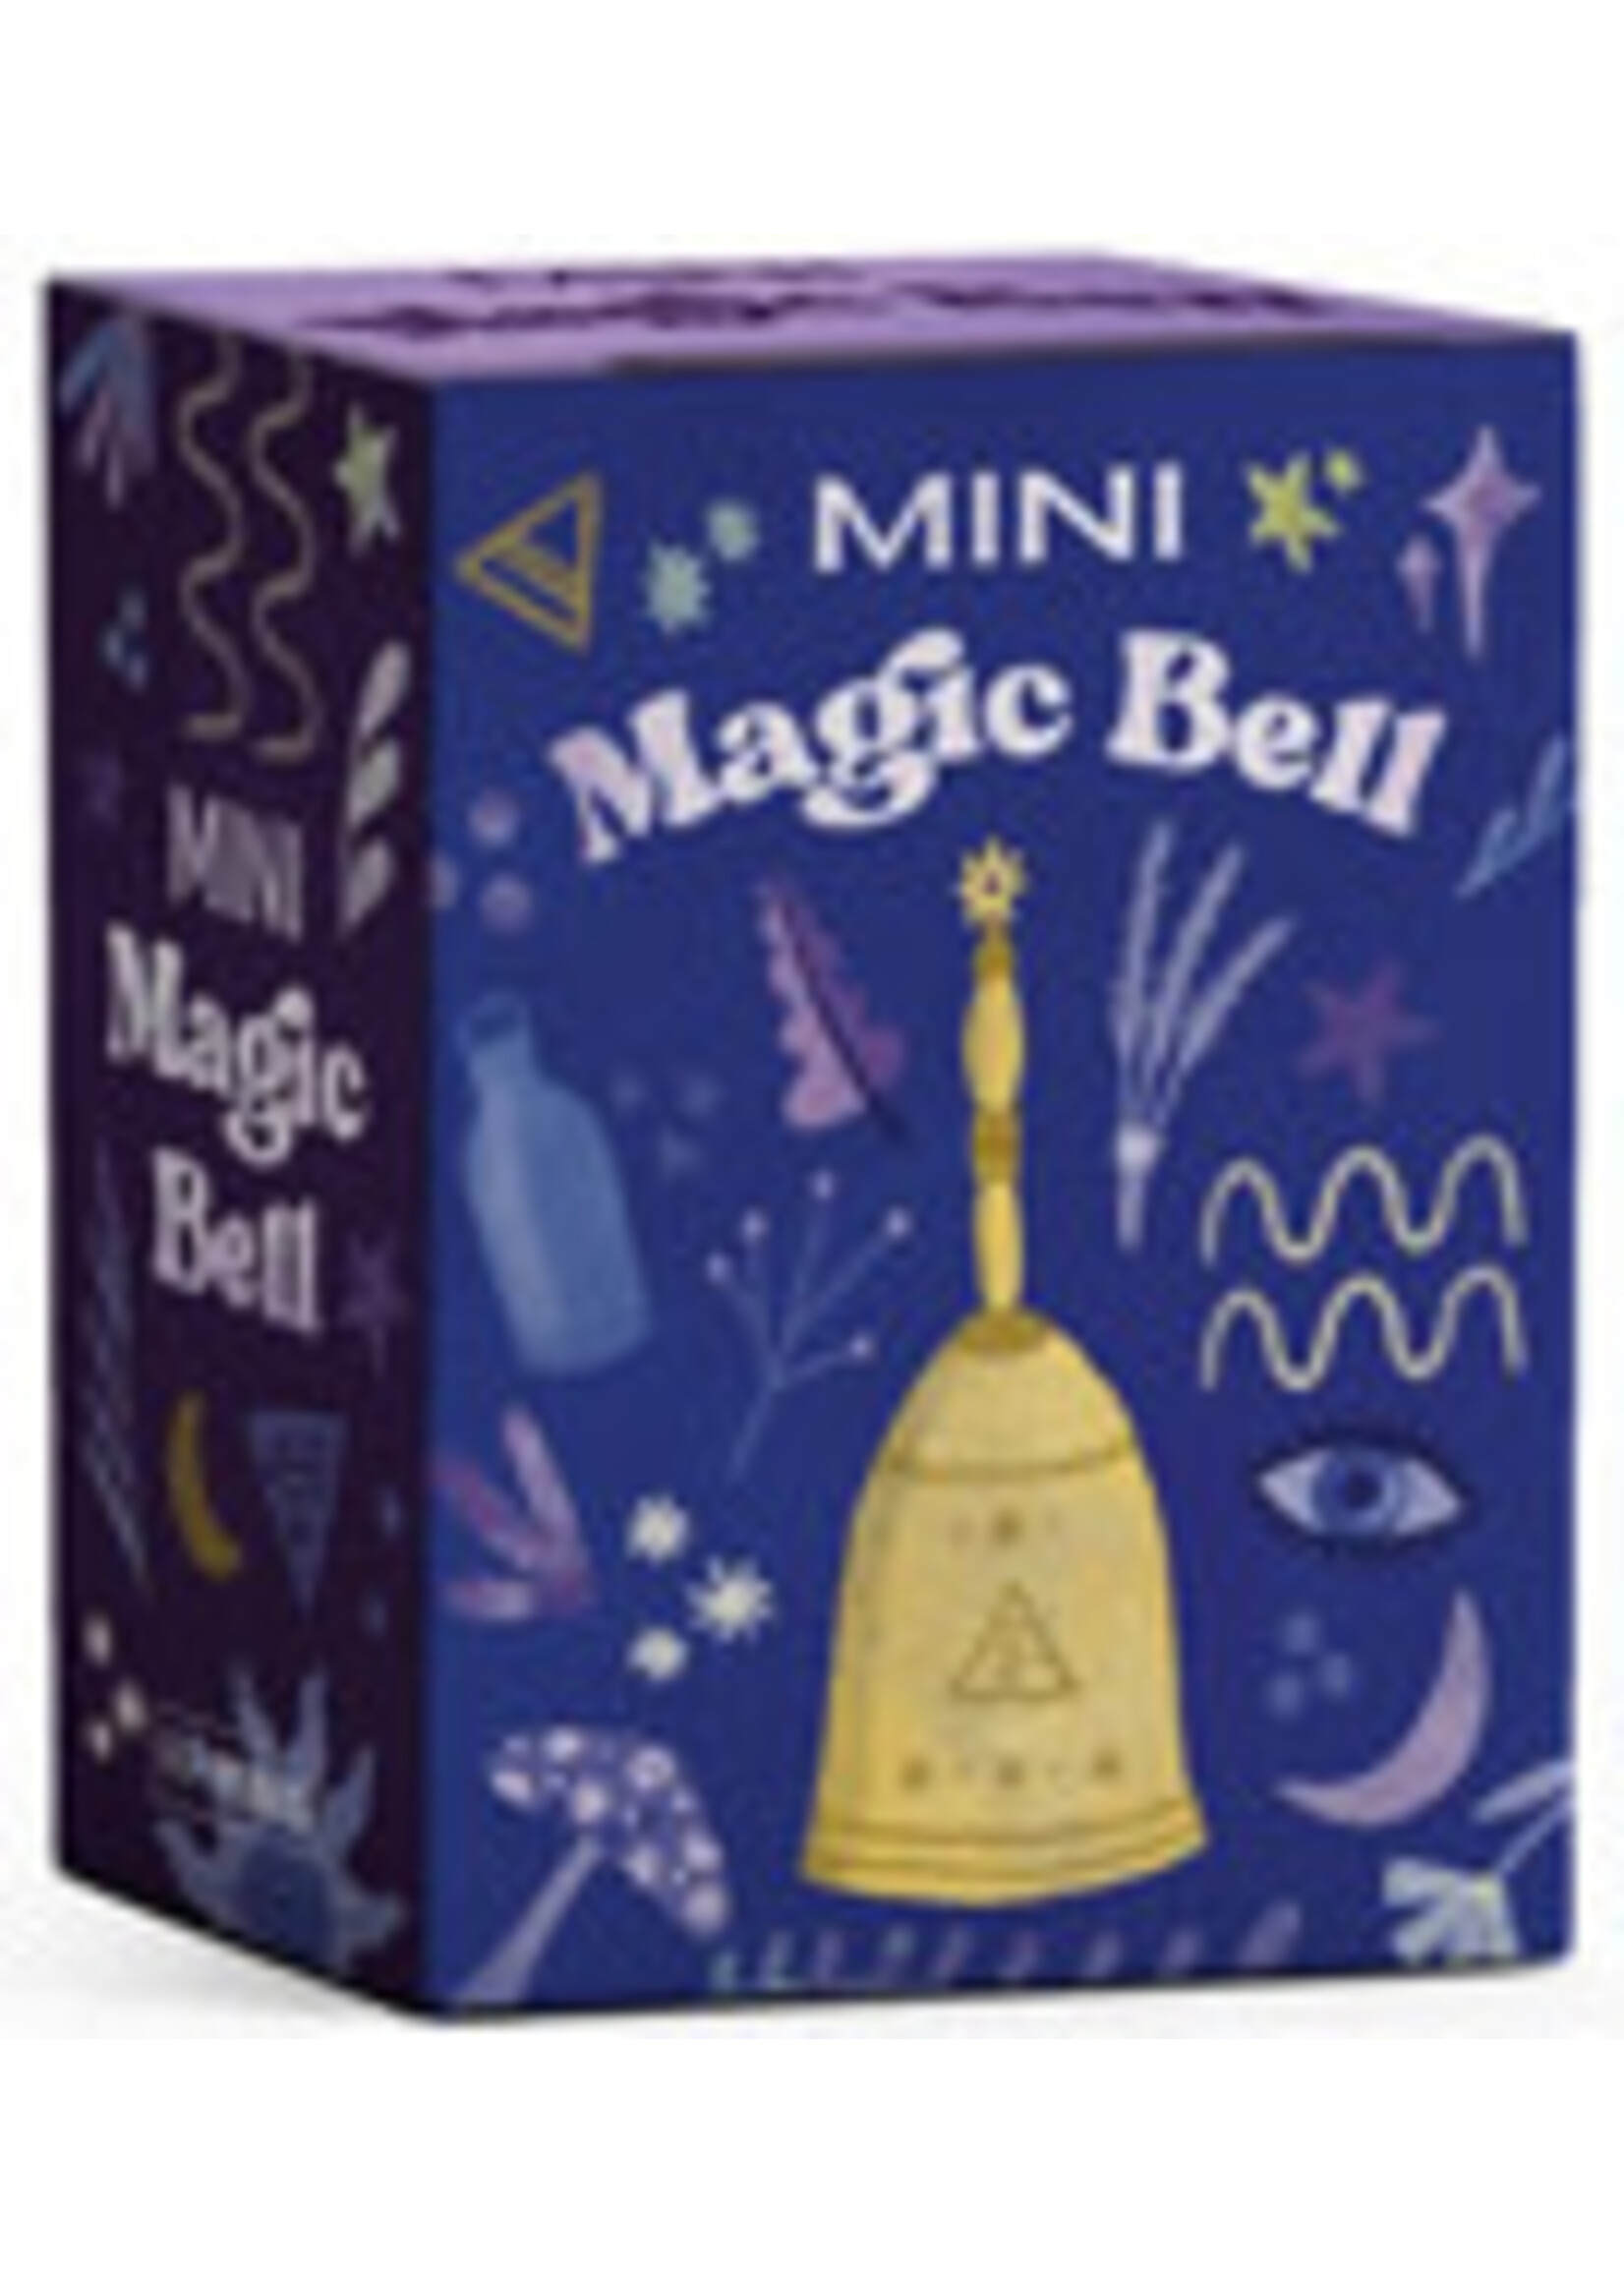 Mini Magic Bell